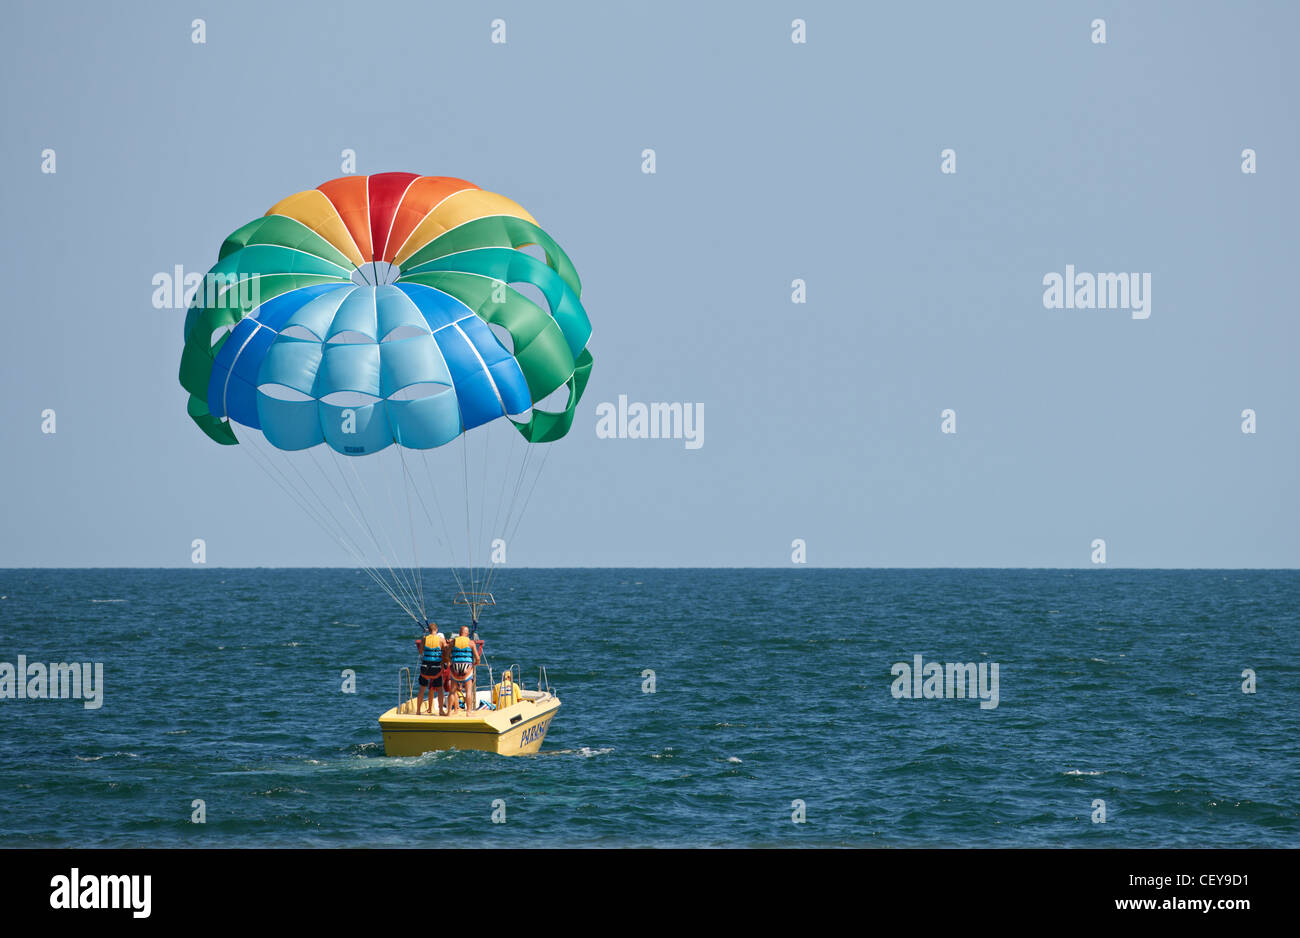 Parasailing Fallschirm und Boot auf dem Wasser Stockfotografie - Alamy